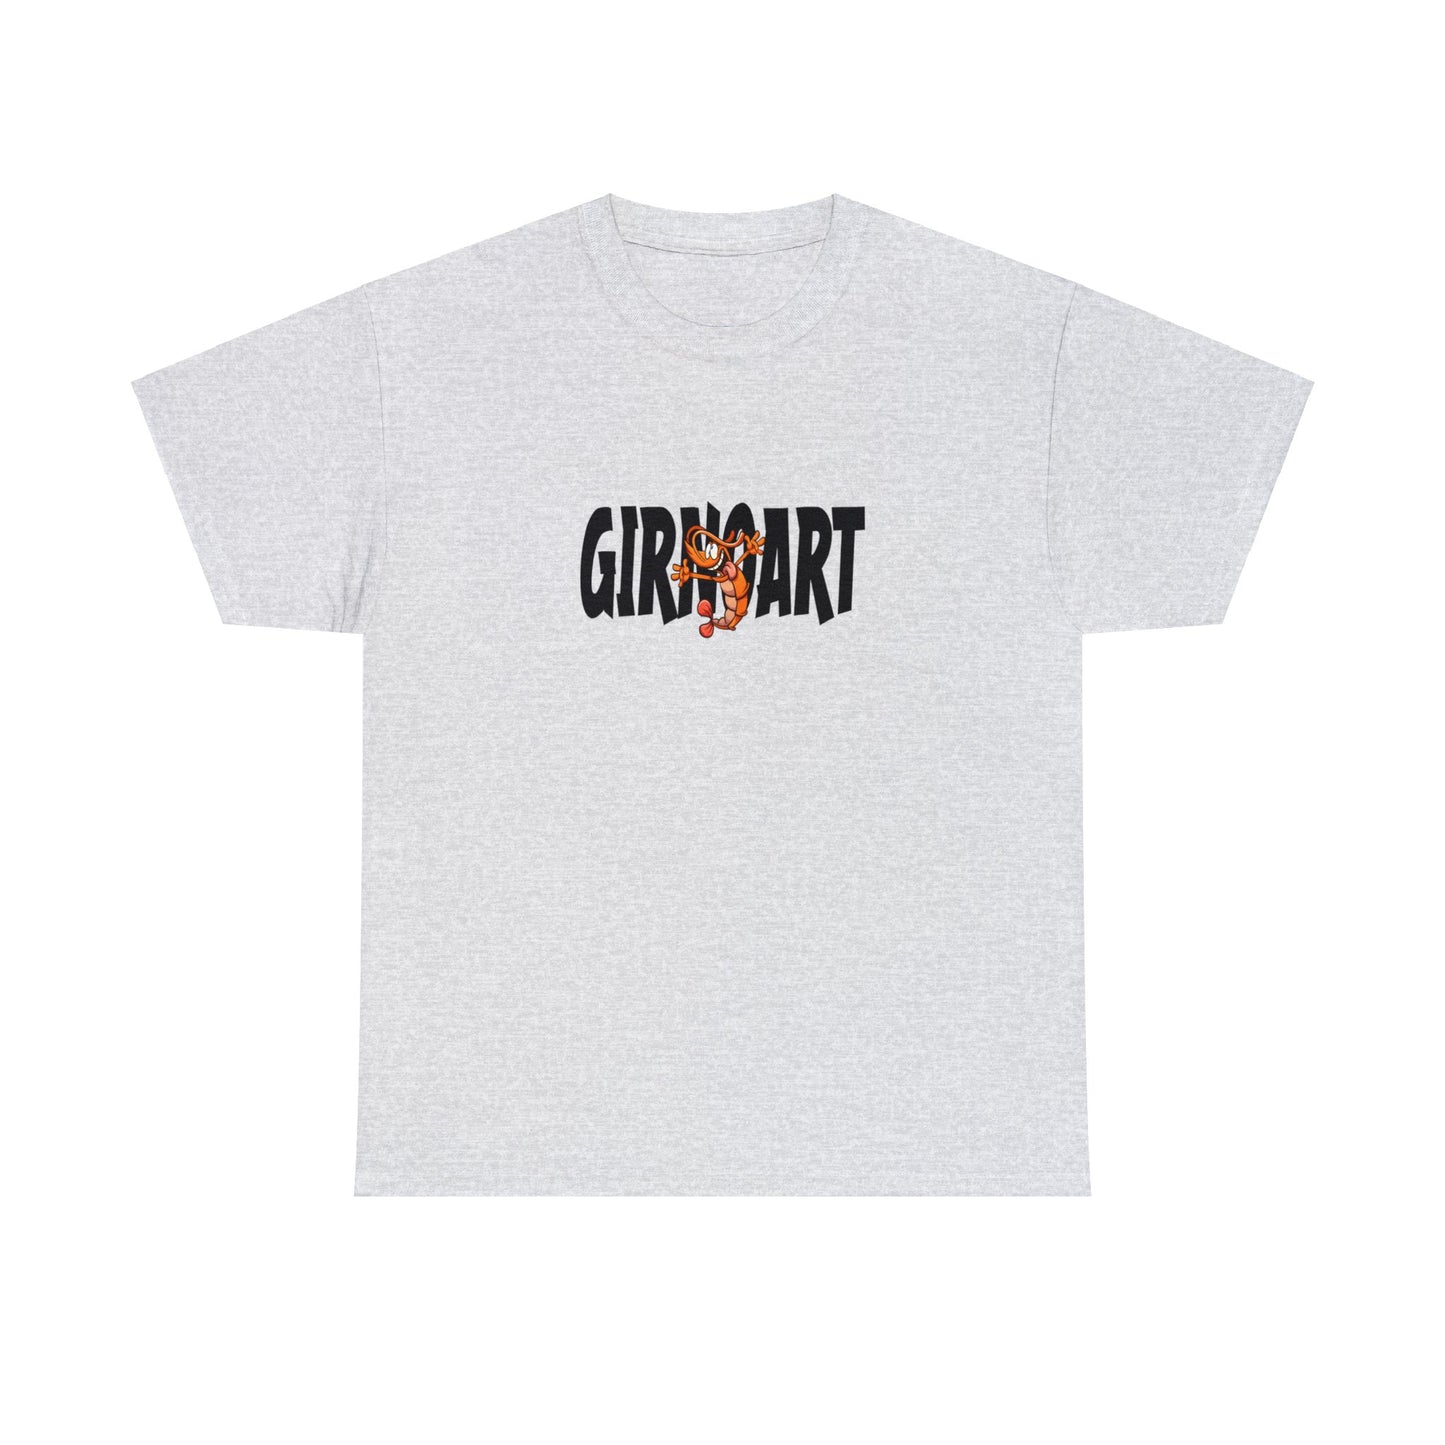 Int Gentsch - Tshirt - Girnoart